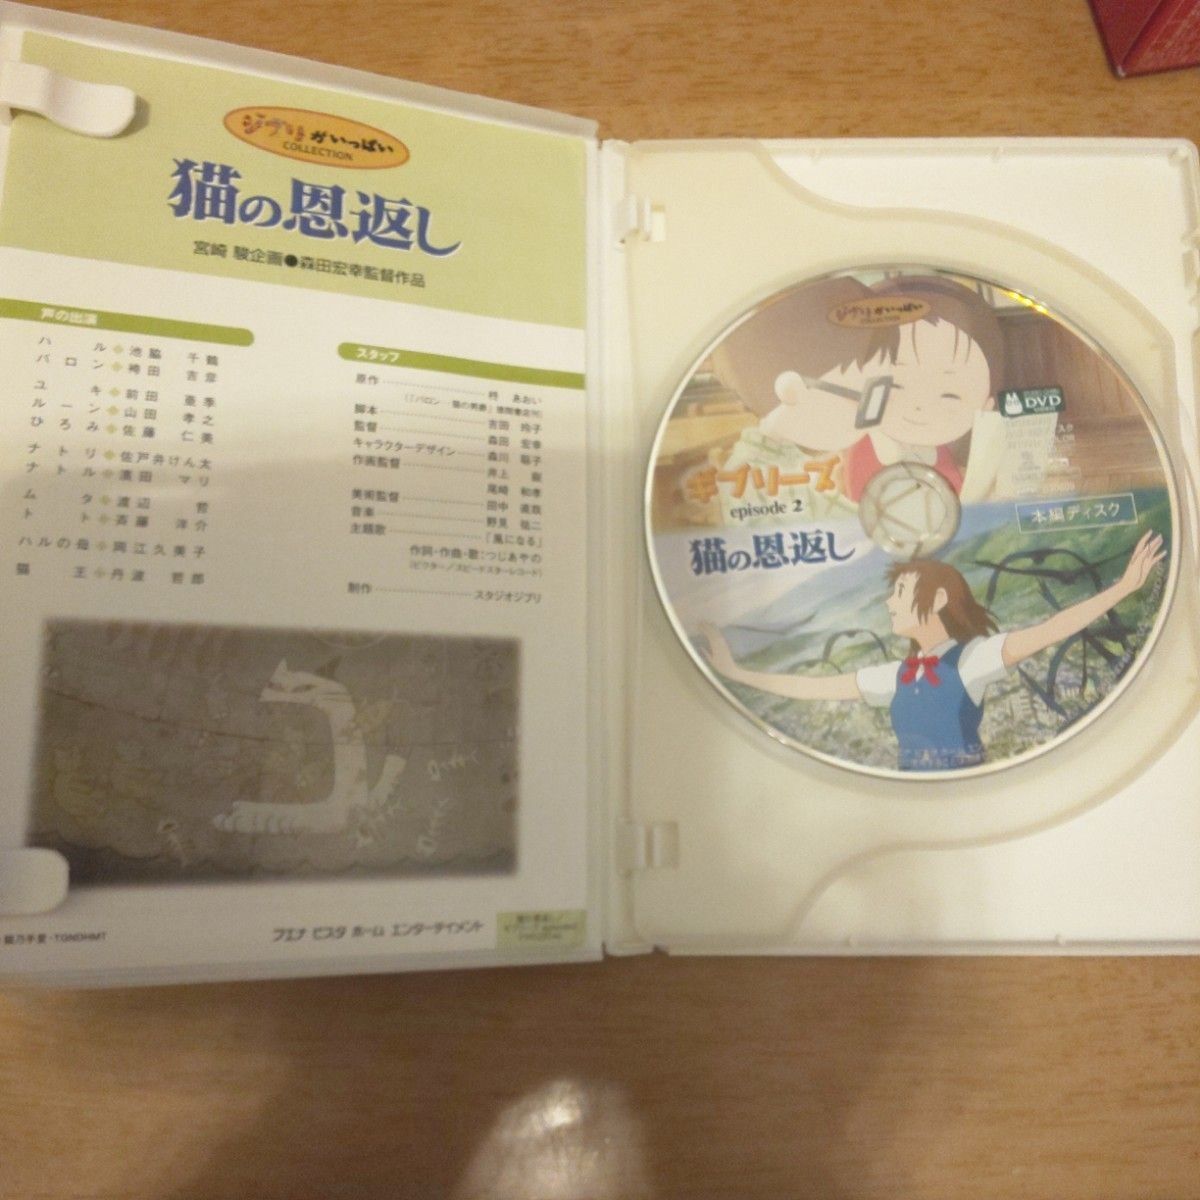 猫の恩返し/ギブリーズ episode2 DVD(本編ディスク＋純正ケース)